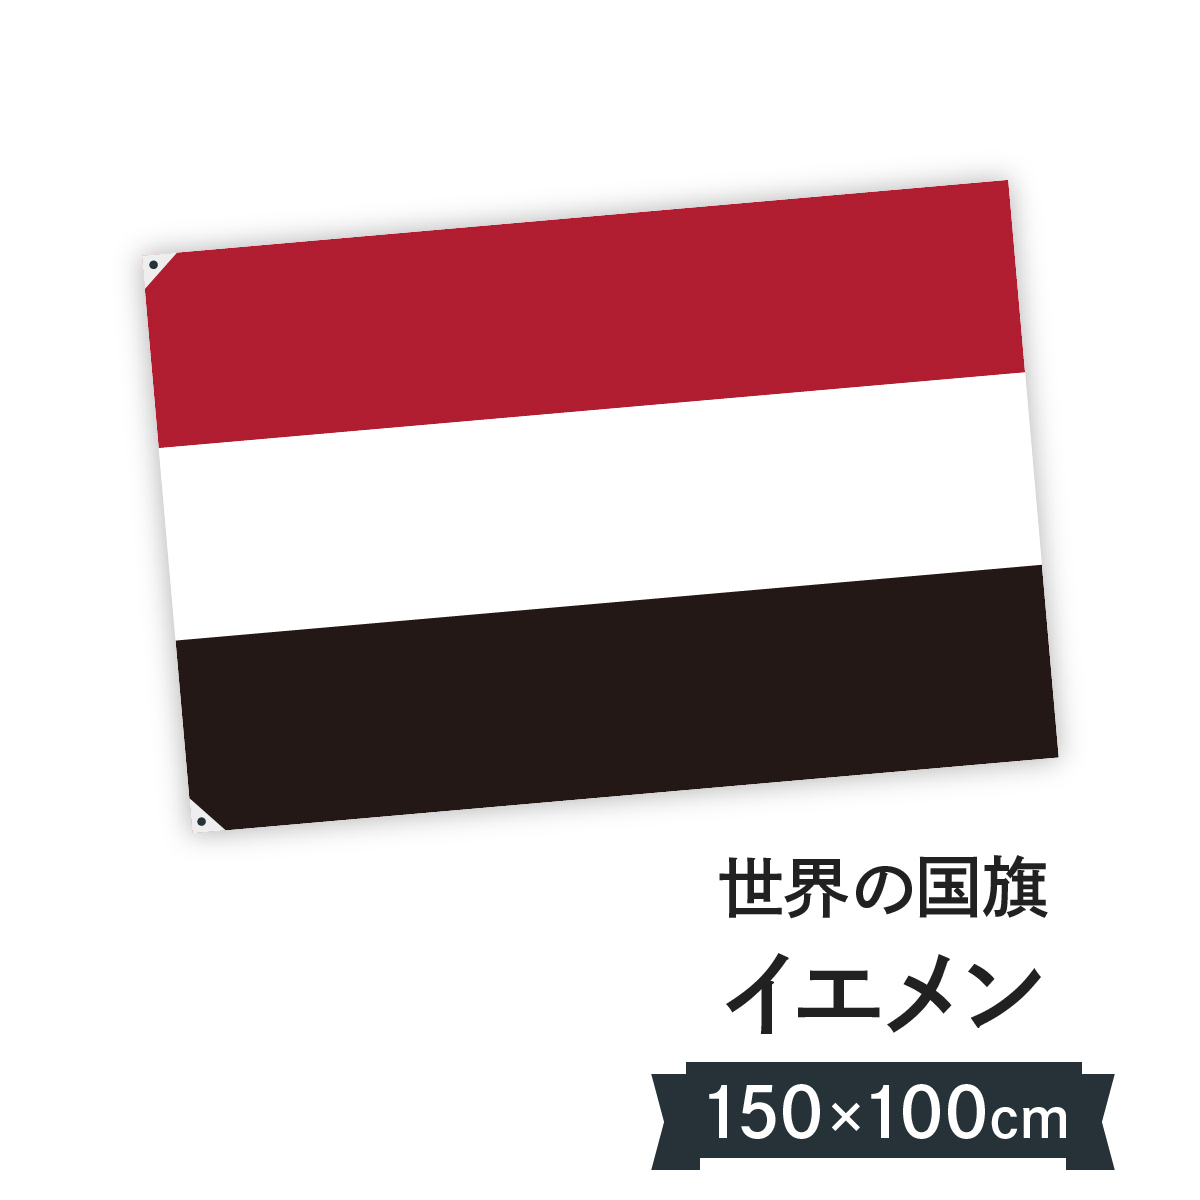 楽天市場 イエメン共和国 国旗 W150cm H100cm グッズプロ